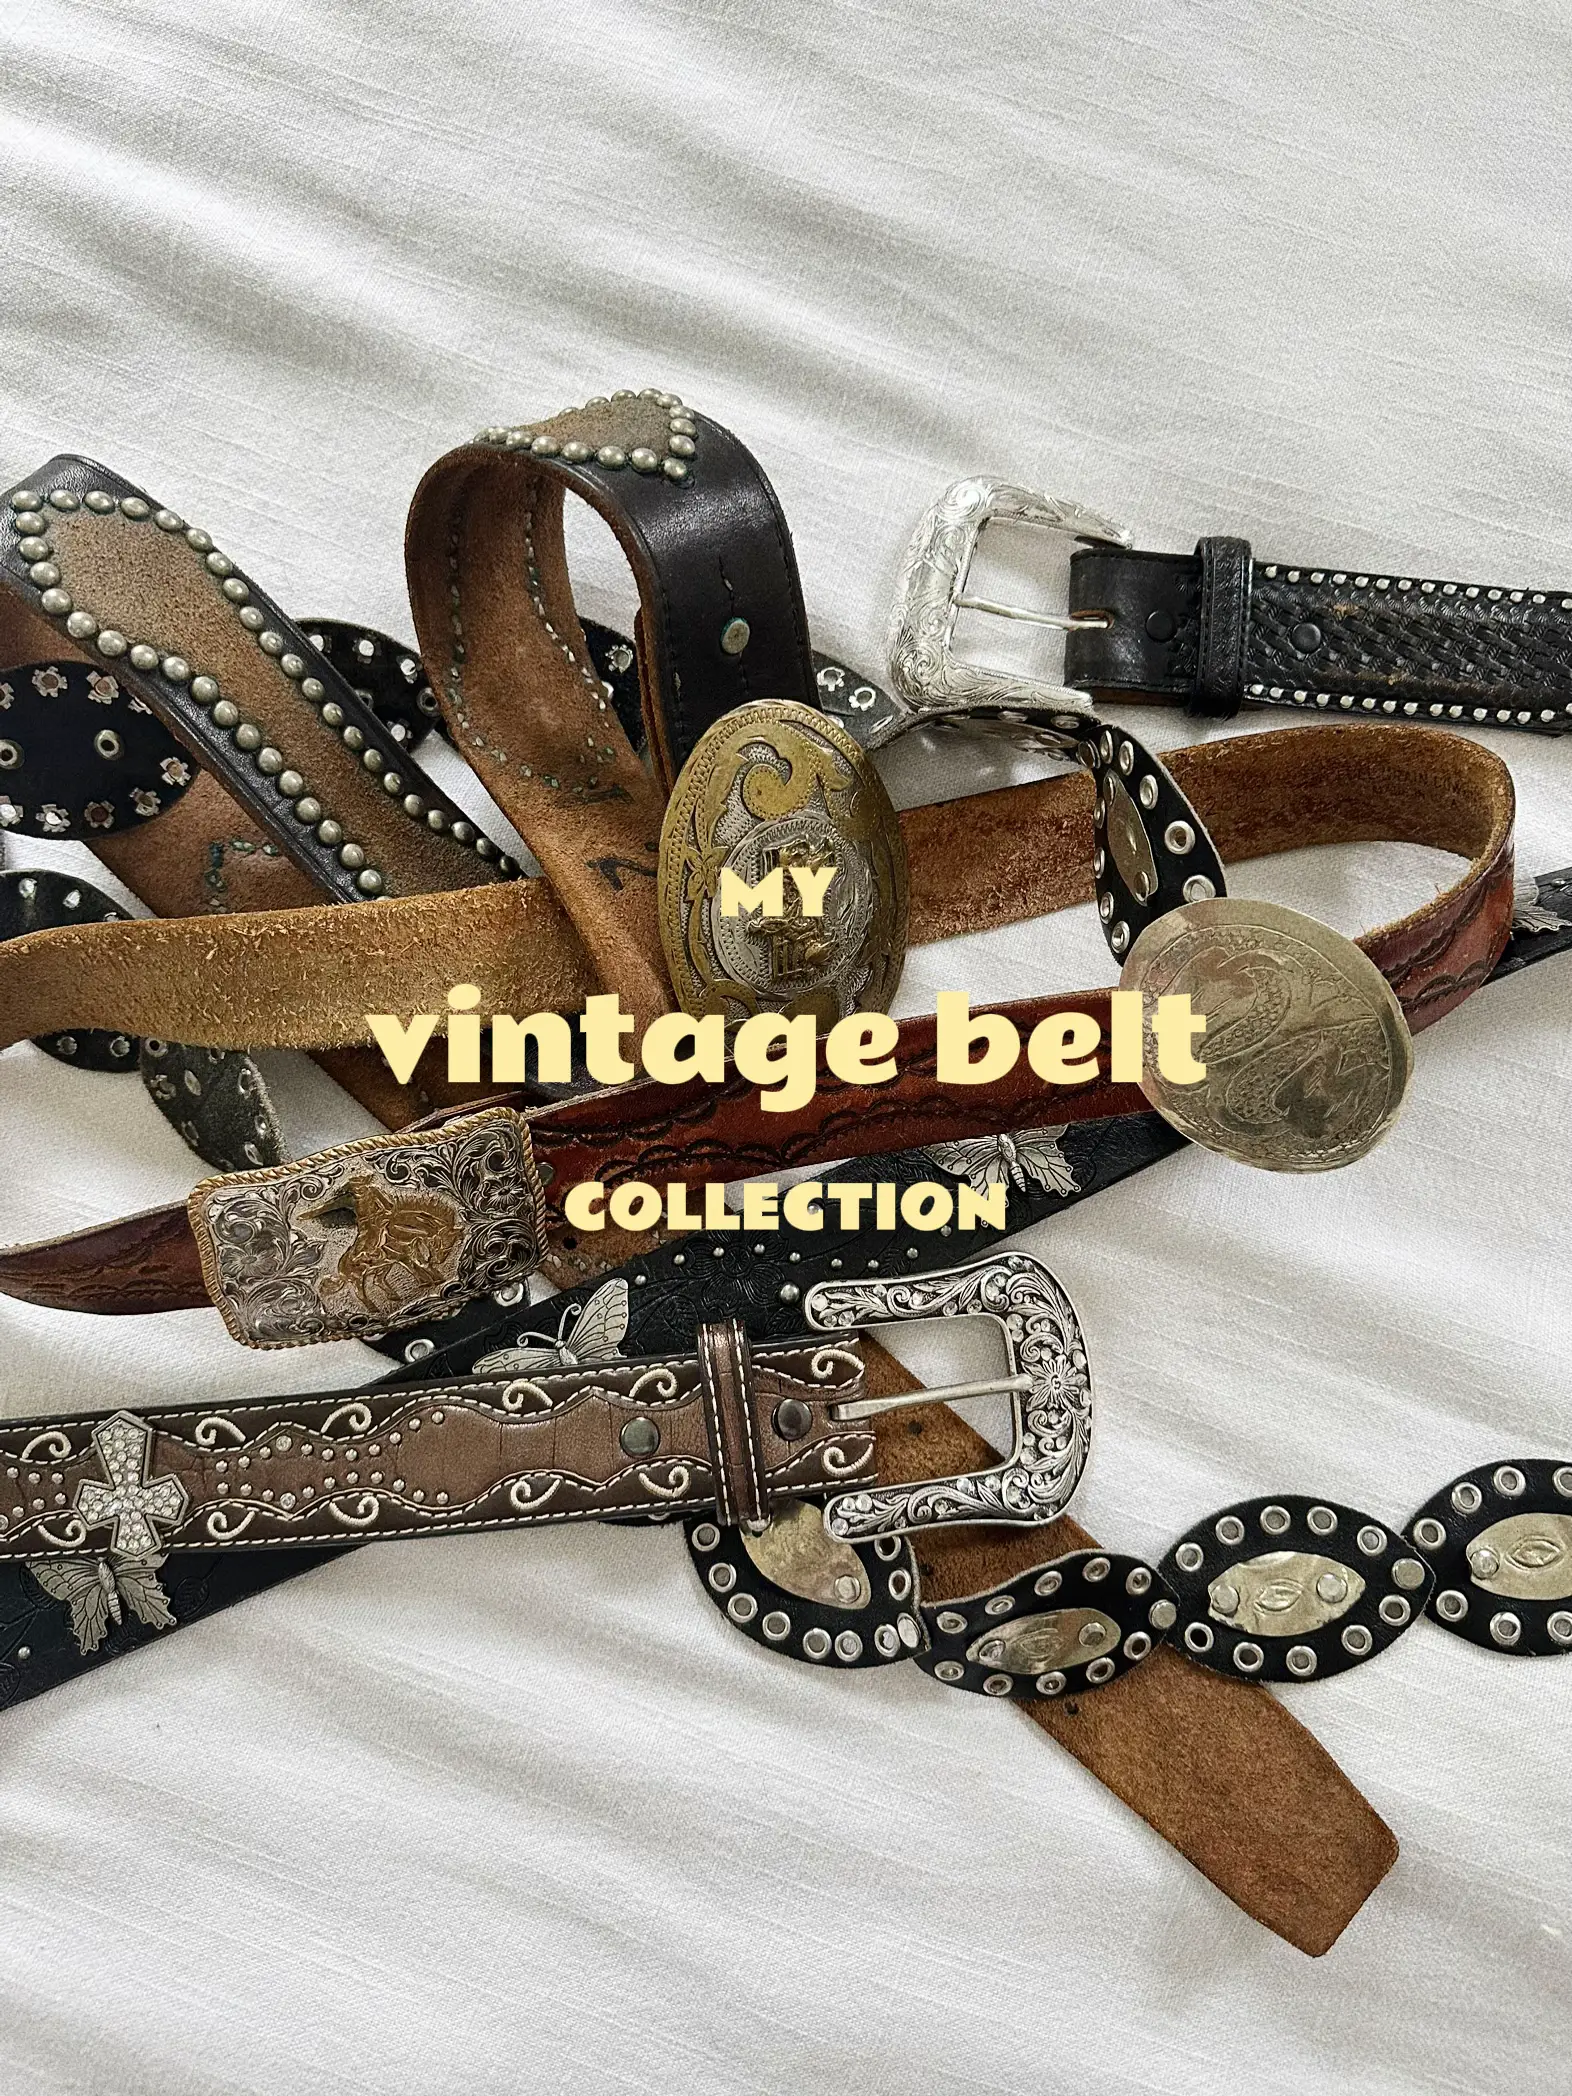 Western belt buckle sets - Lemon8 Search